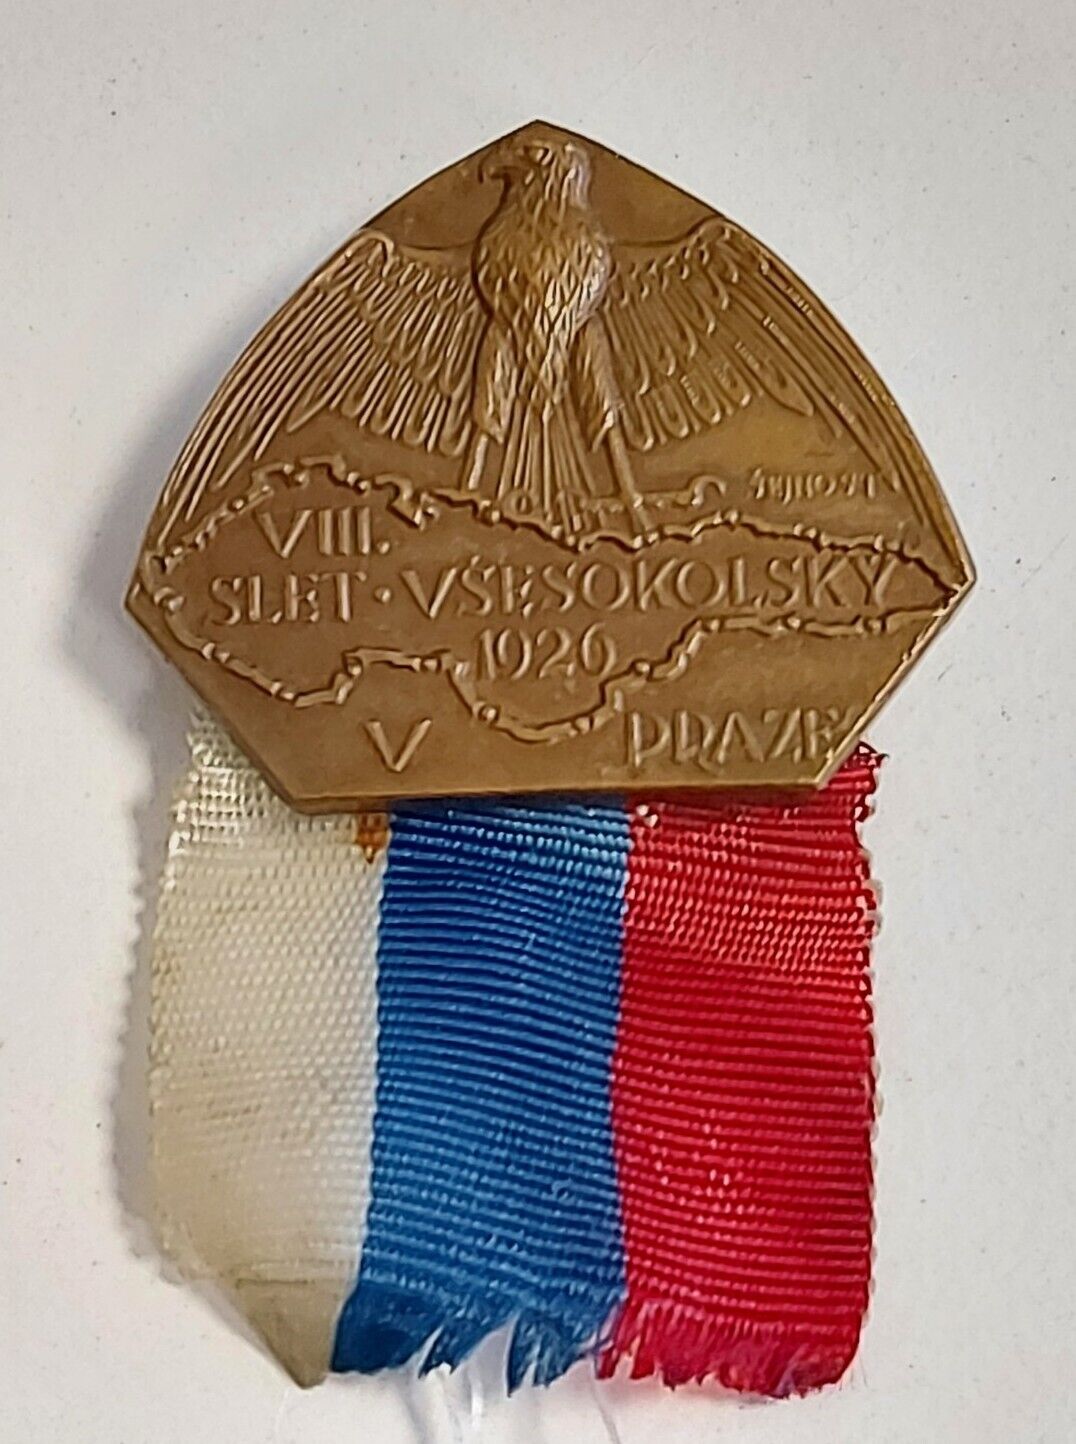 VIII. SLET VSESOKOLSKY V PRAZE, Praha 1926. Czechoslovaki vintage pin, badge 